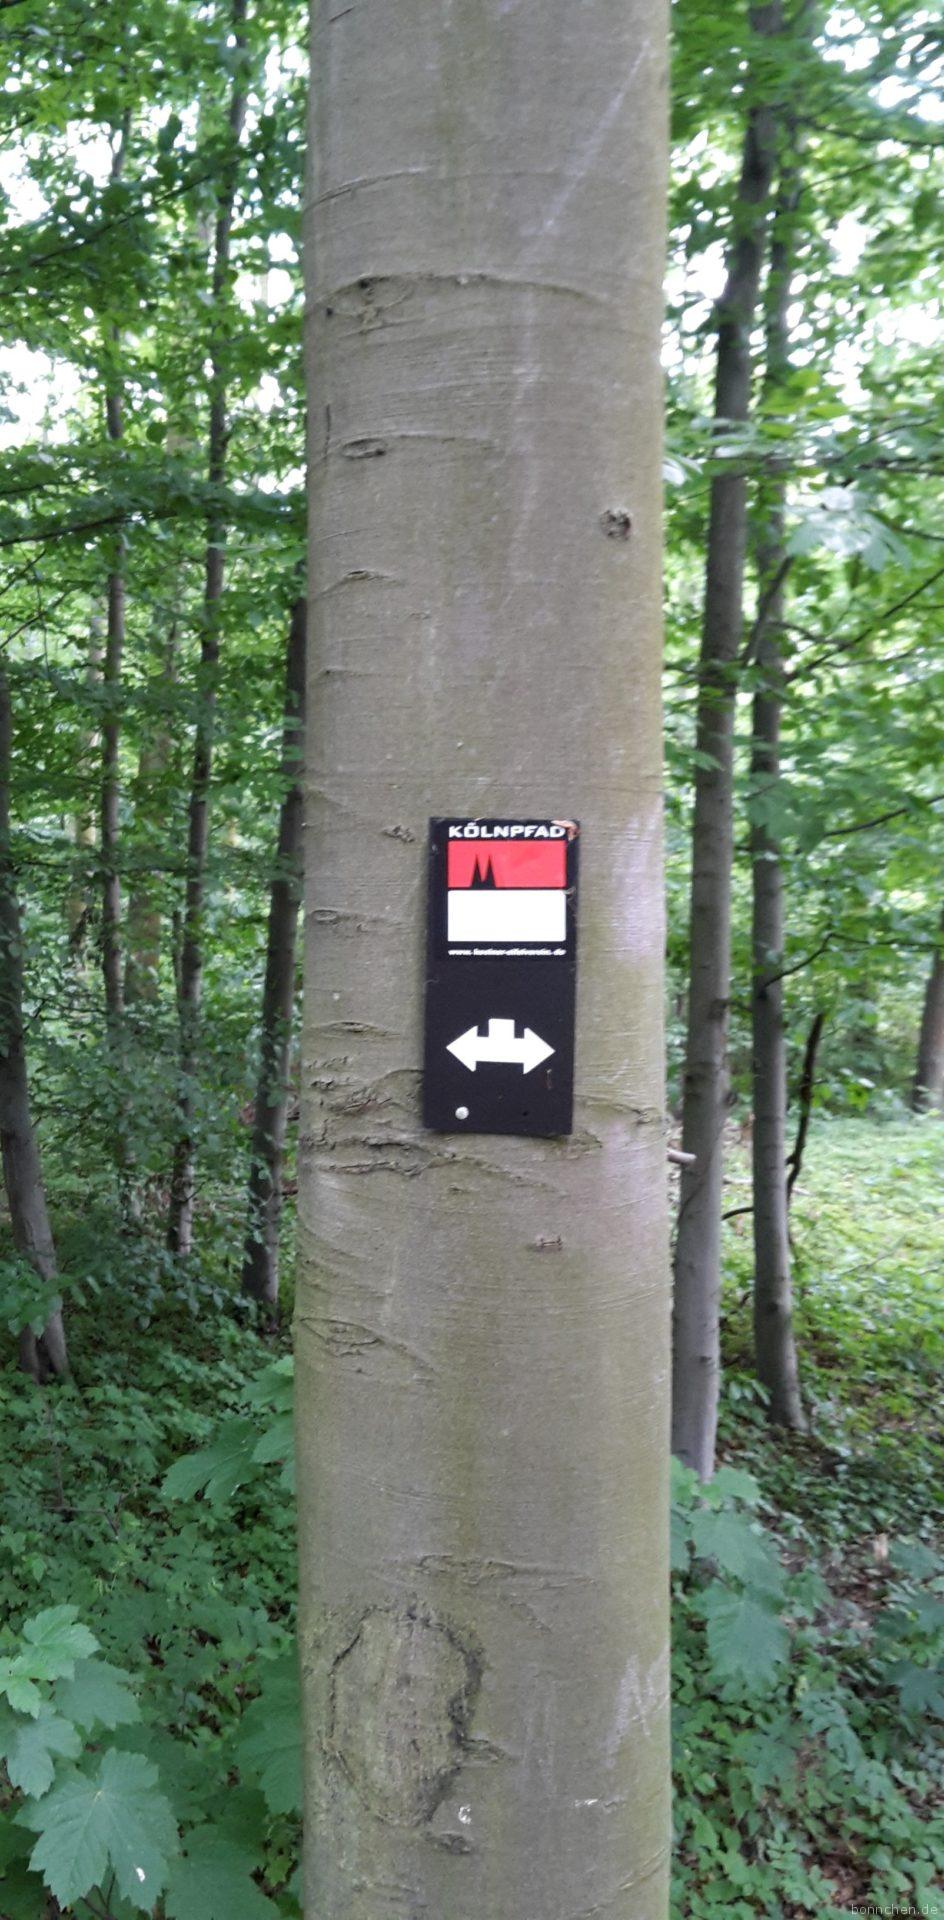 Kölnpfad Etappe 1 Wanderzeichen im Forstbotanischen Garten